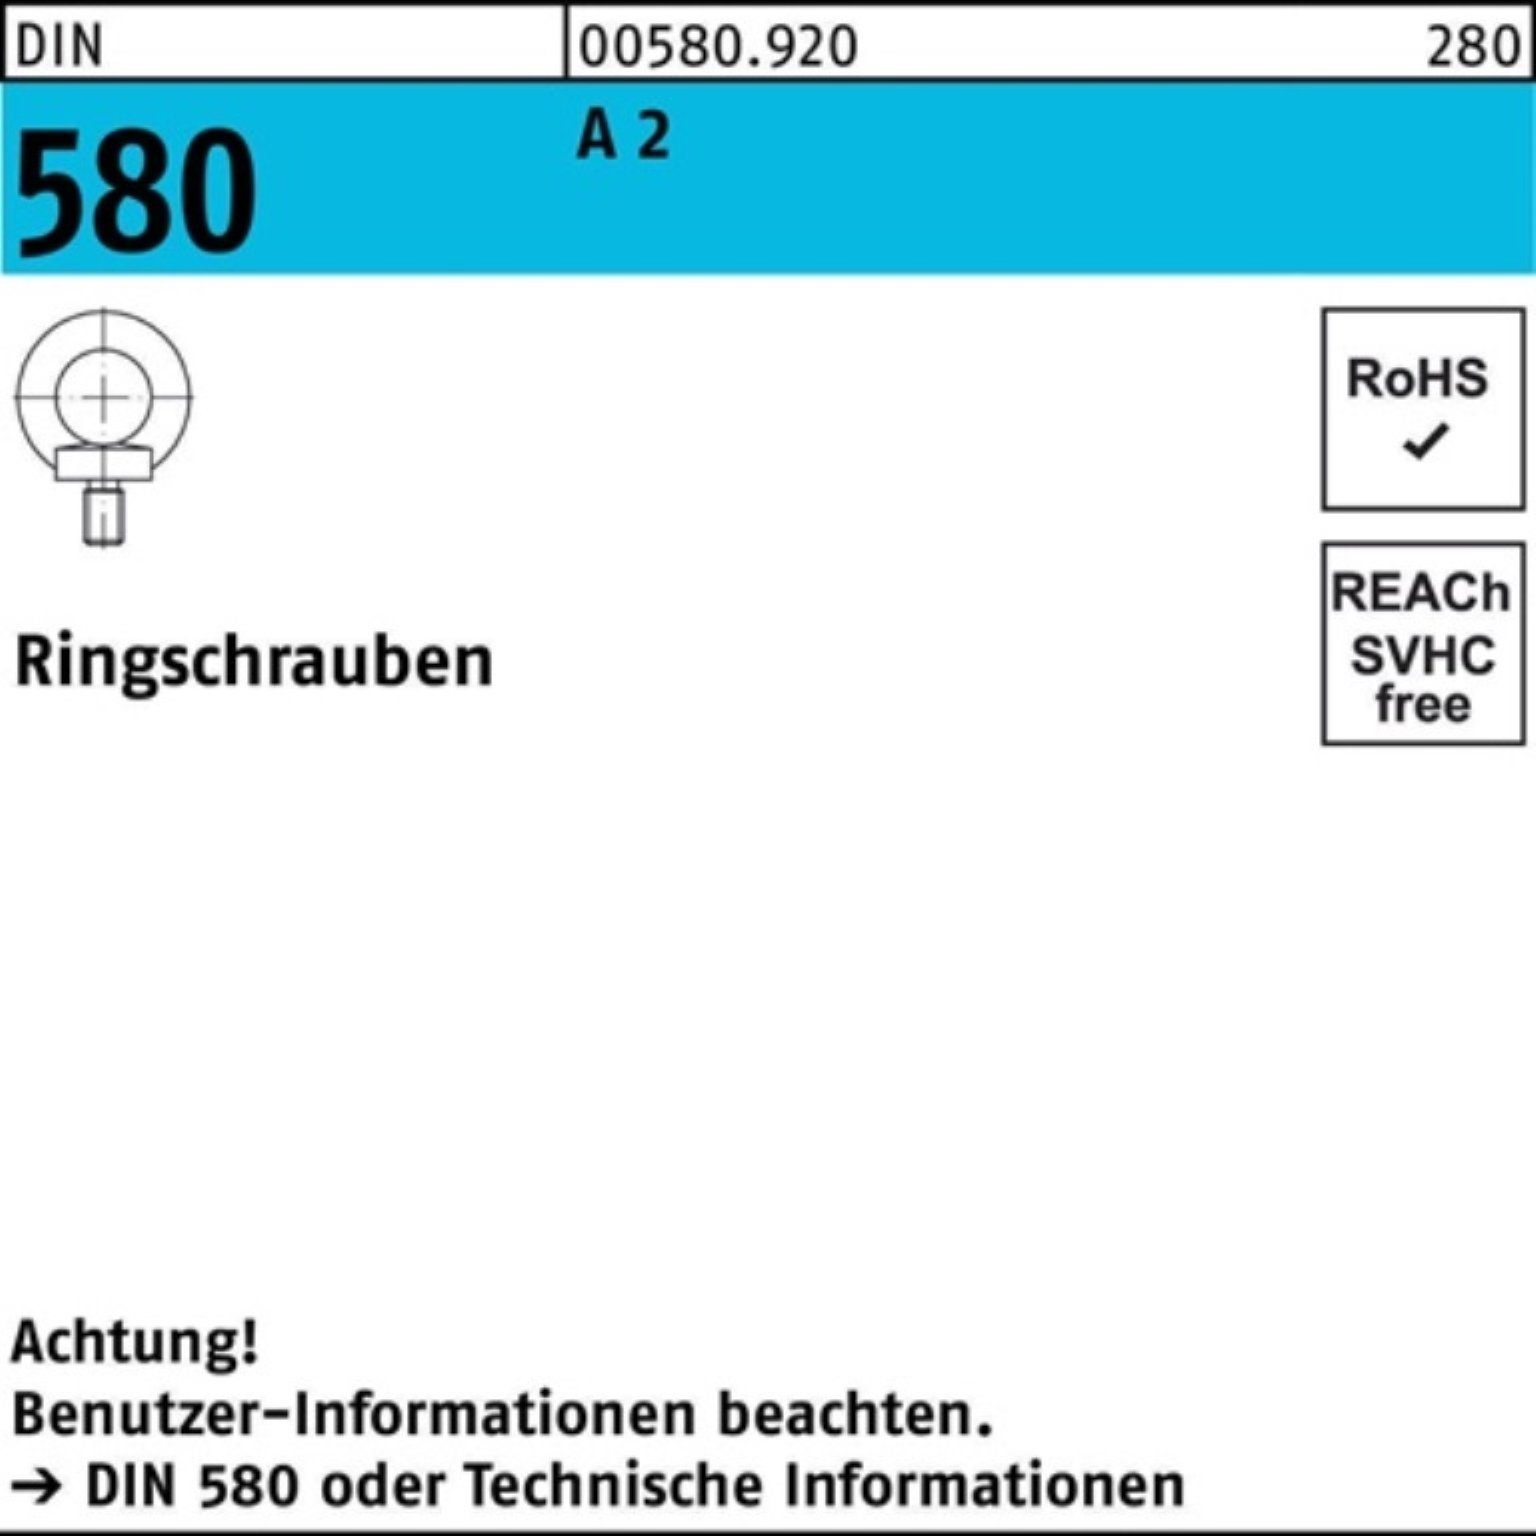 Reyher Schraube 100er Pack Ringschraube DIN 580 M16 A 2 1 Stück DIN 580 A 2 Ringschra